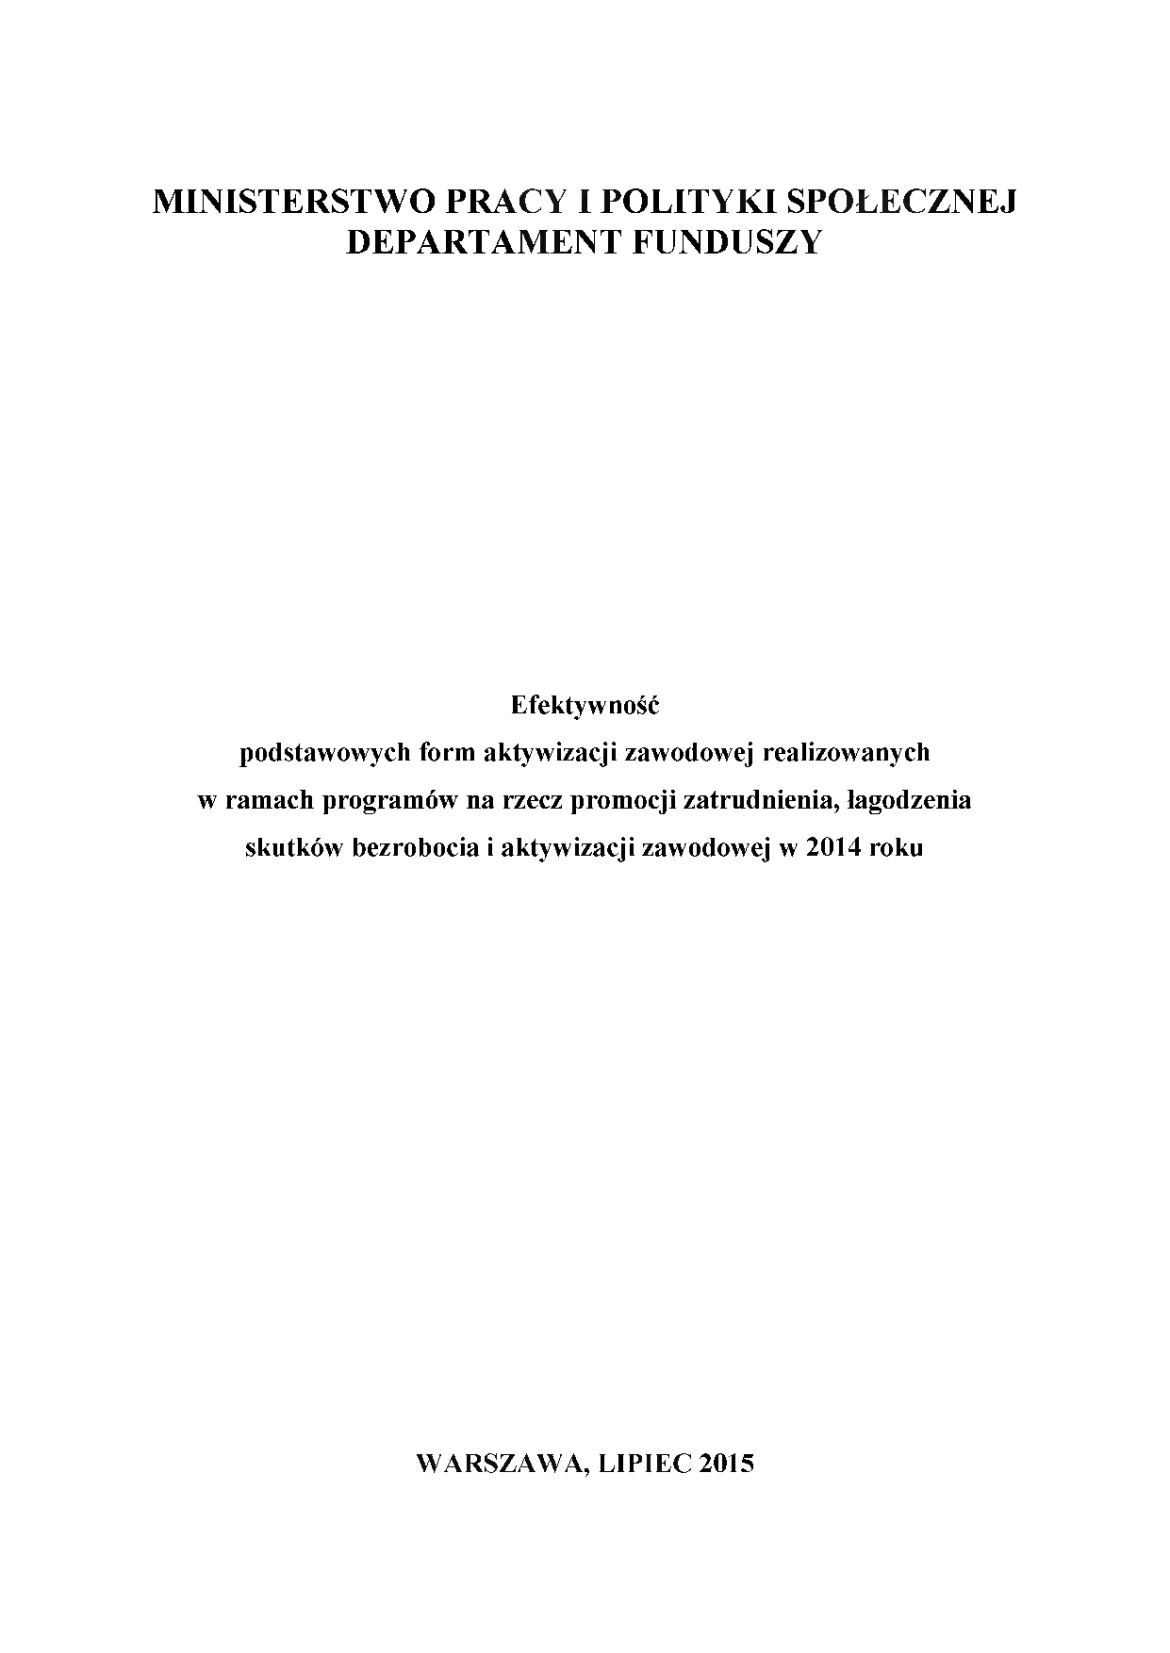 Zdjęcie Raportu Departamenru Finansów Ministerstwa Pracy i Polityki Społecznej za rok 2014